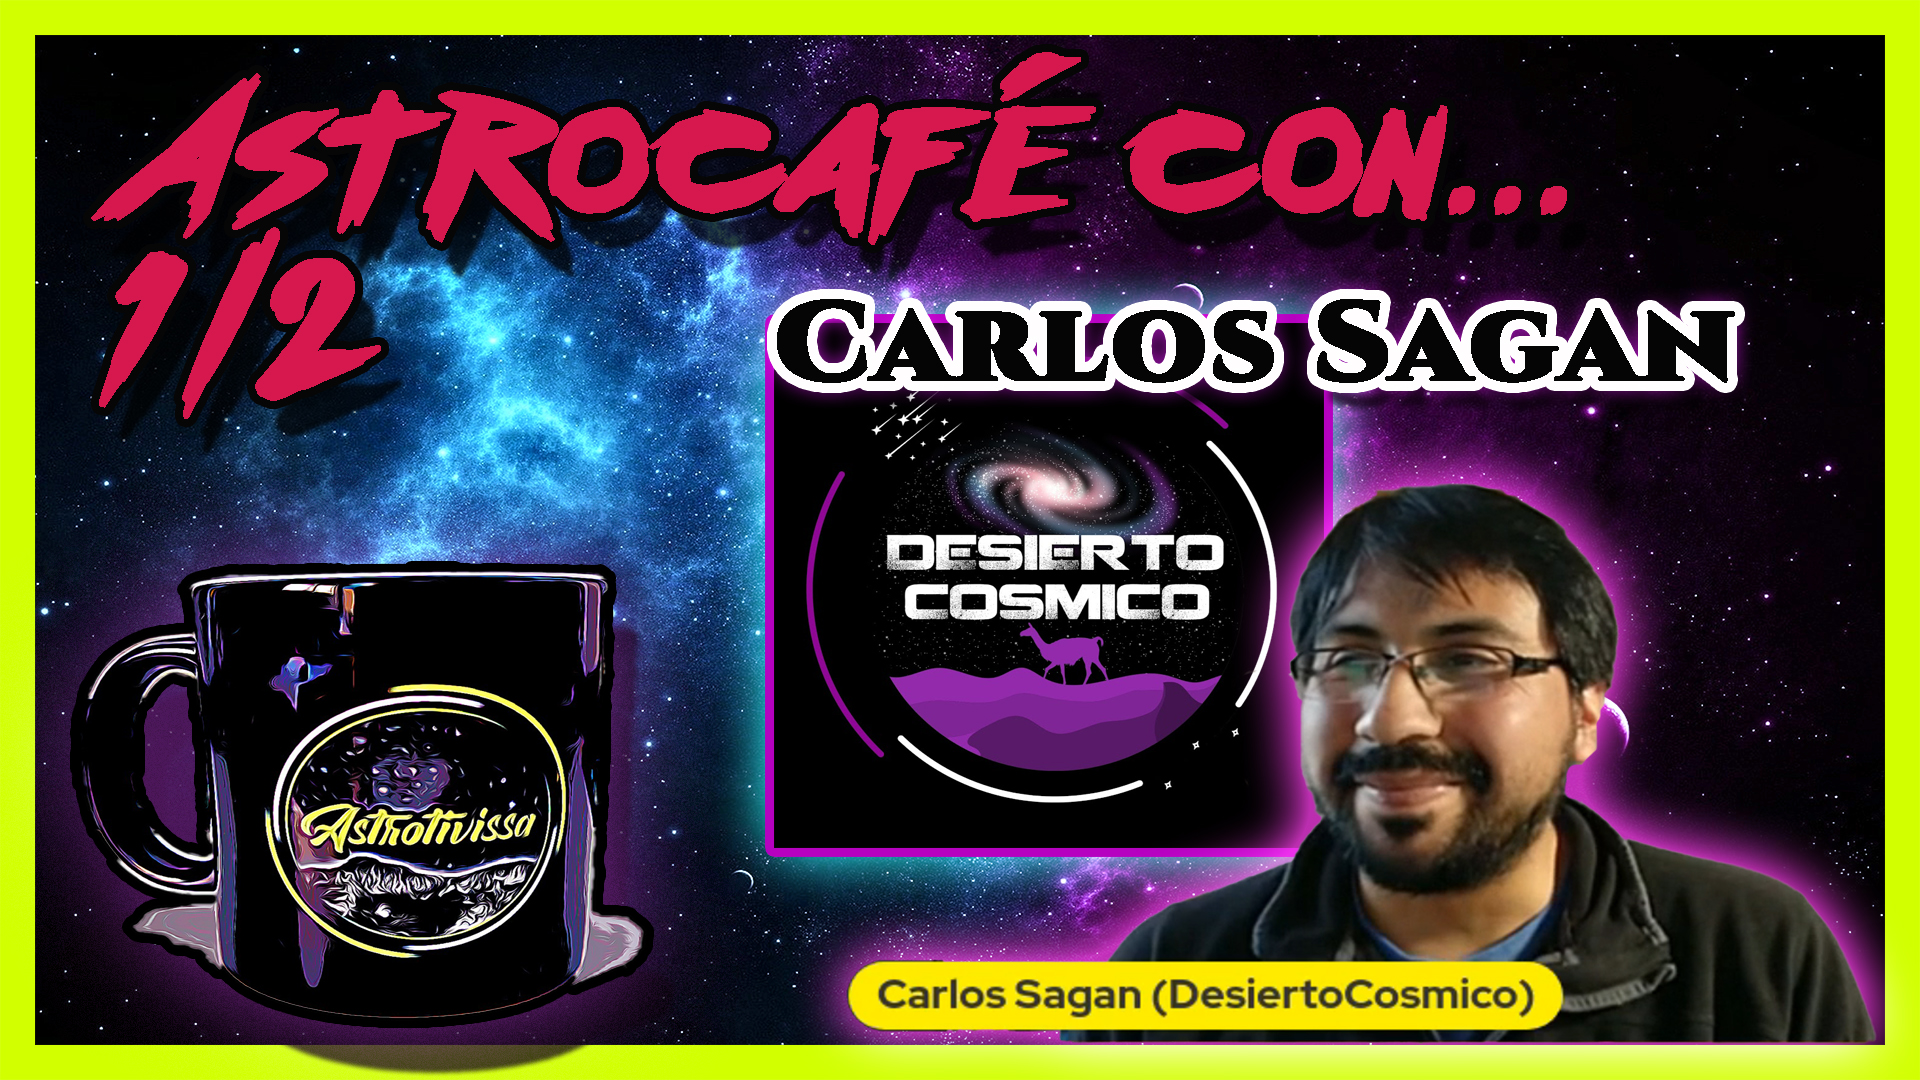 Astrocafé con Carlos Sagan